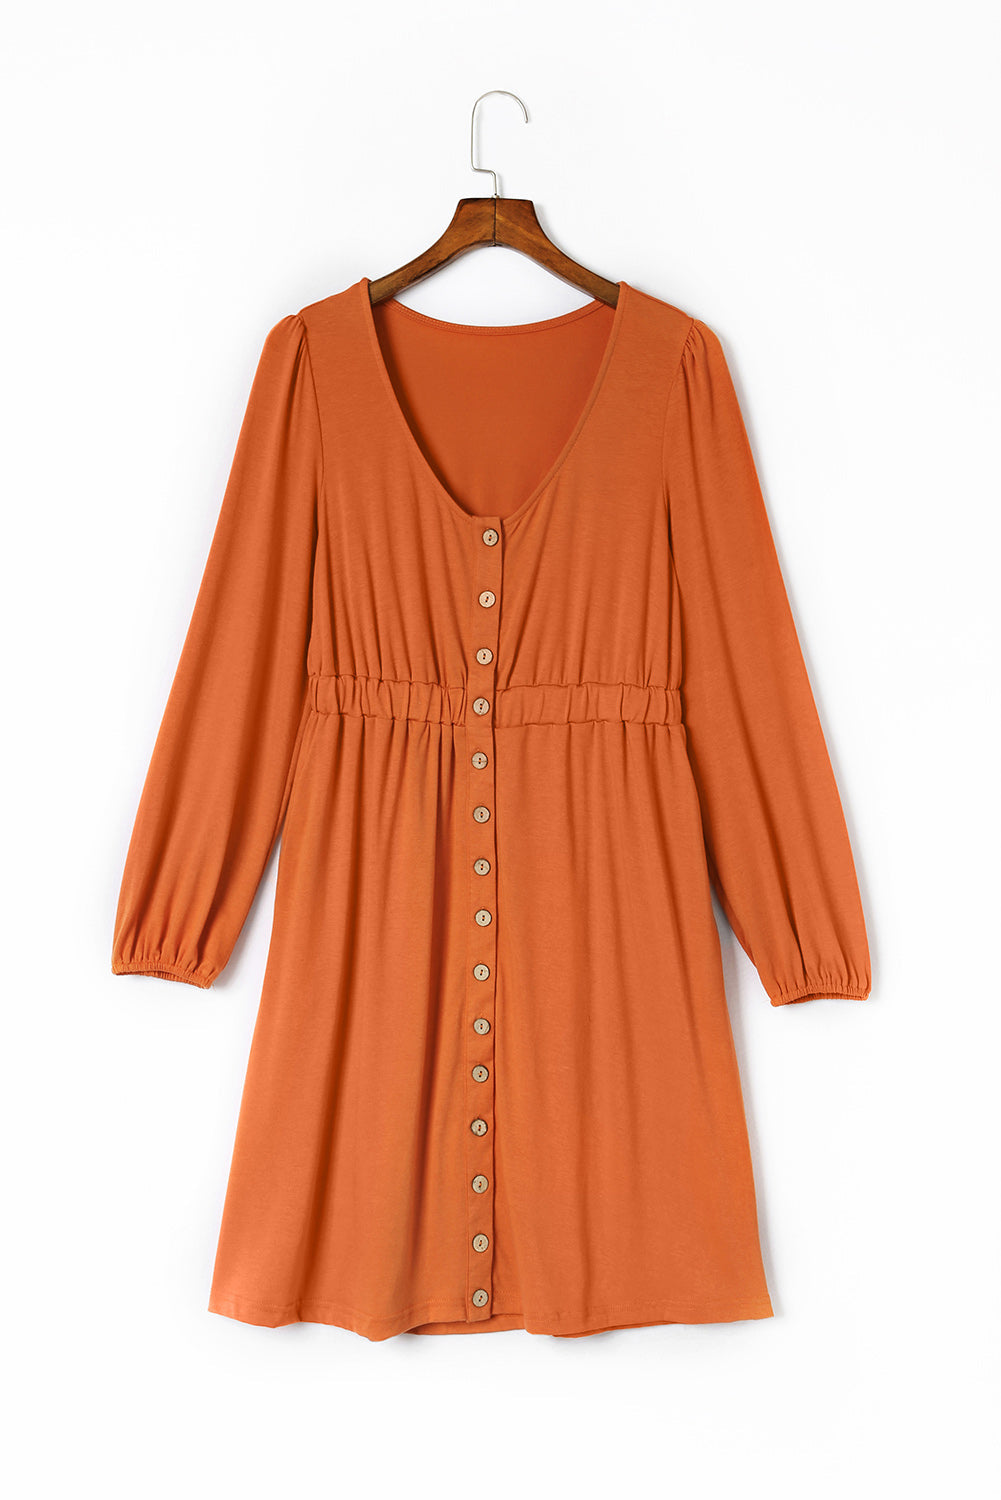 Orange Button Up High Waist Long Sleeve Dress